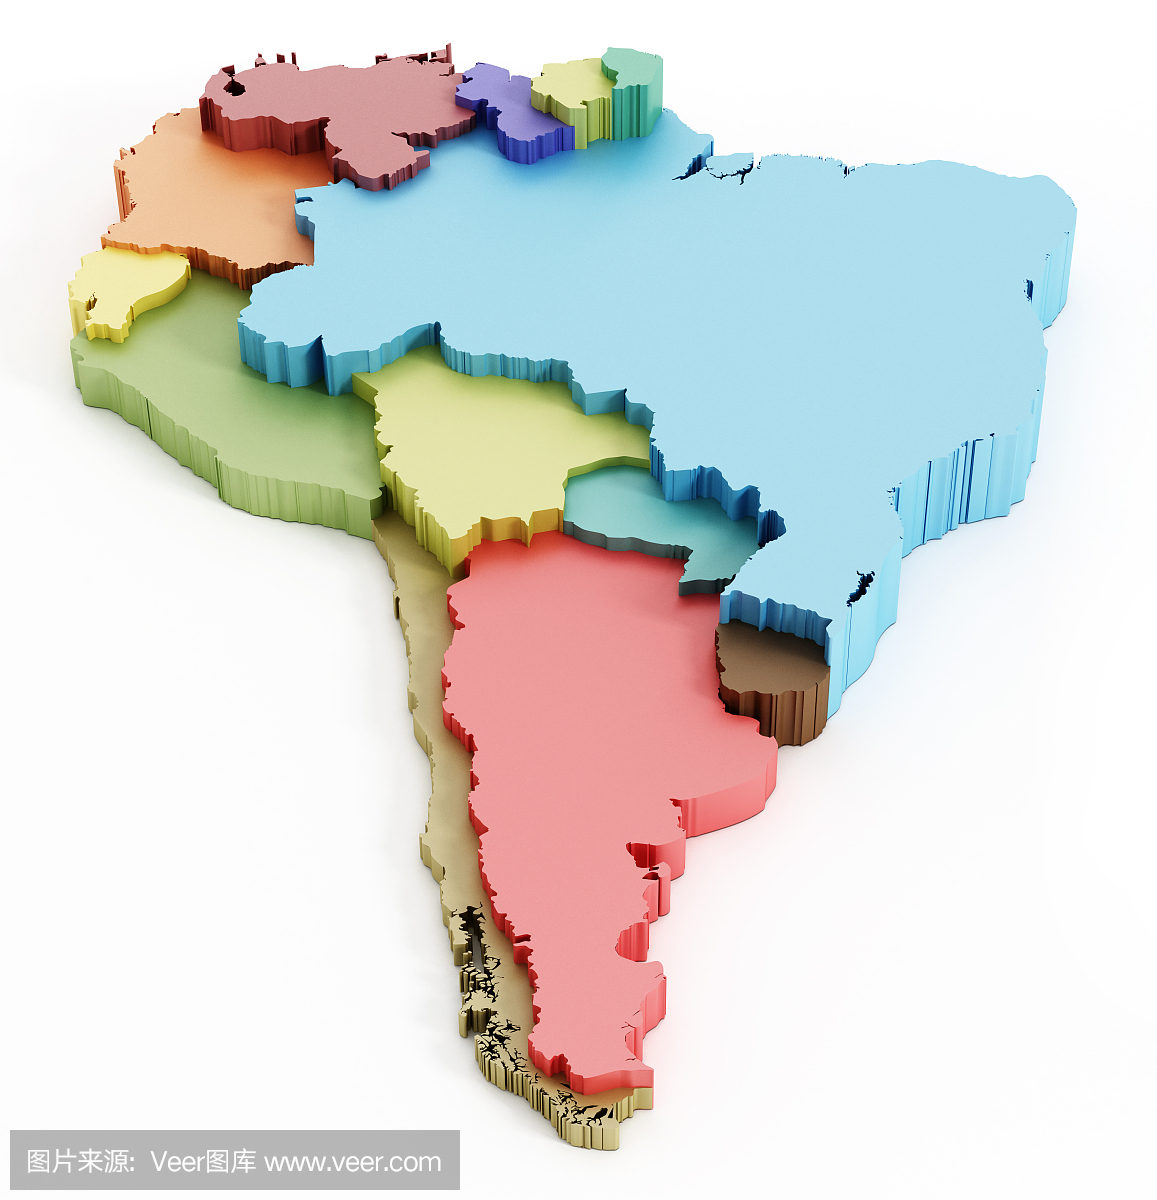 南美地图显示国家边界。